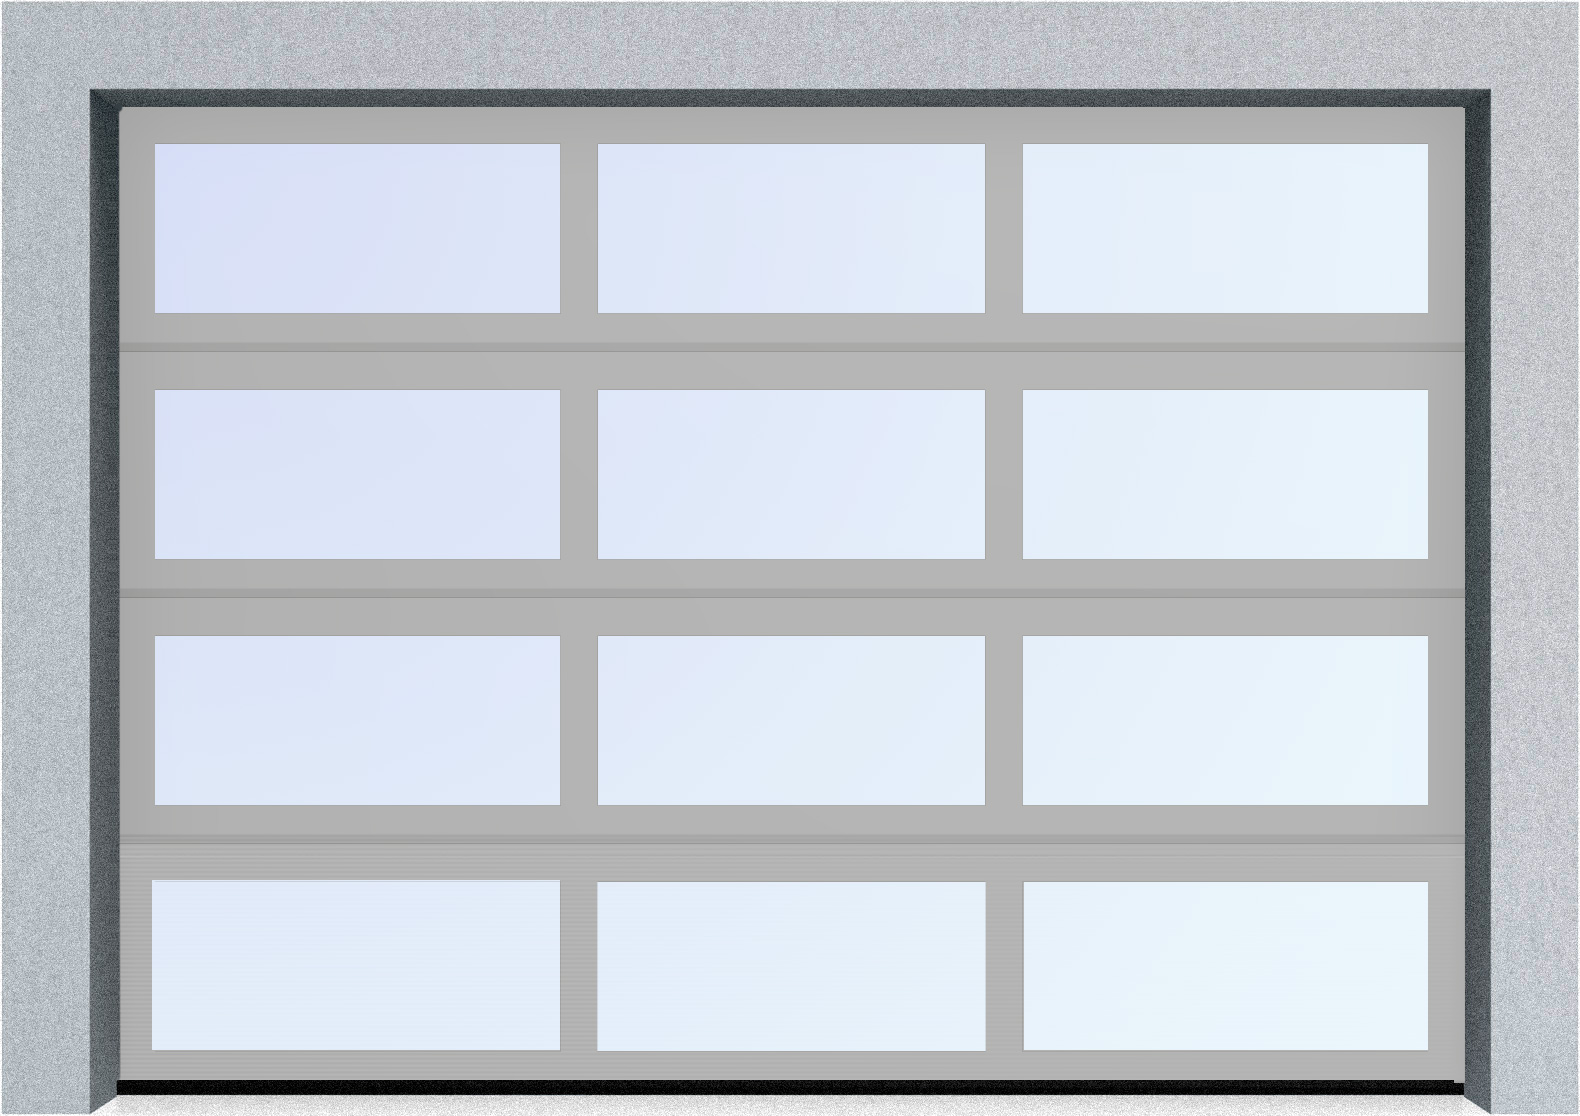  Секционные панорамные ворота серии AluTrend (АЛП) 2125х2250 нижняя панель стандартные цвета, фото 9 